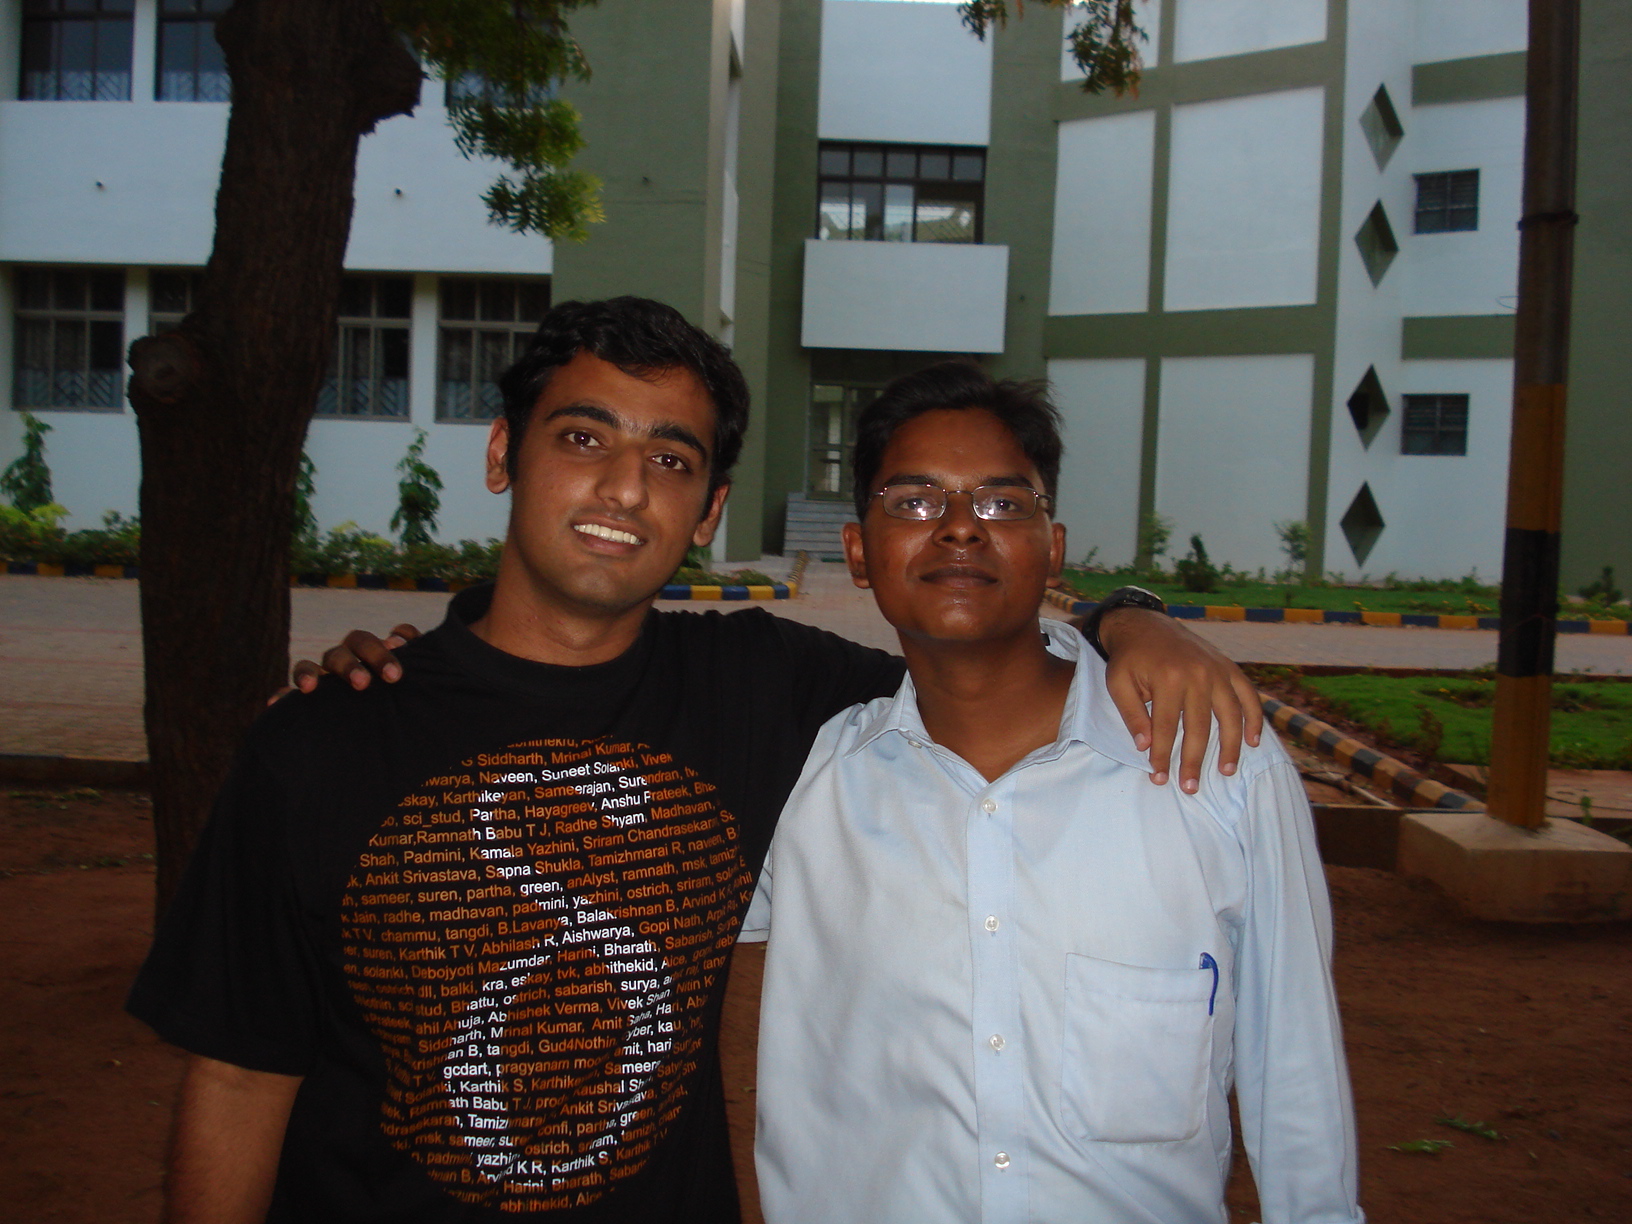 Me and Shishir